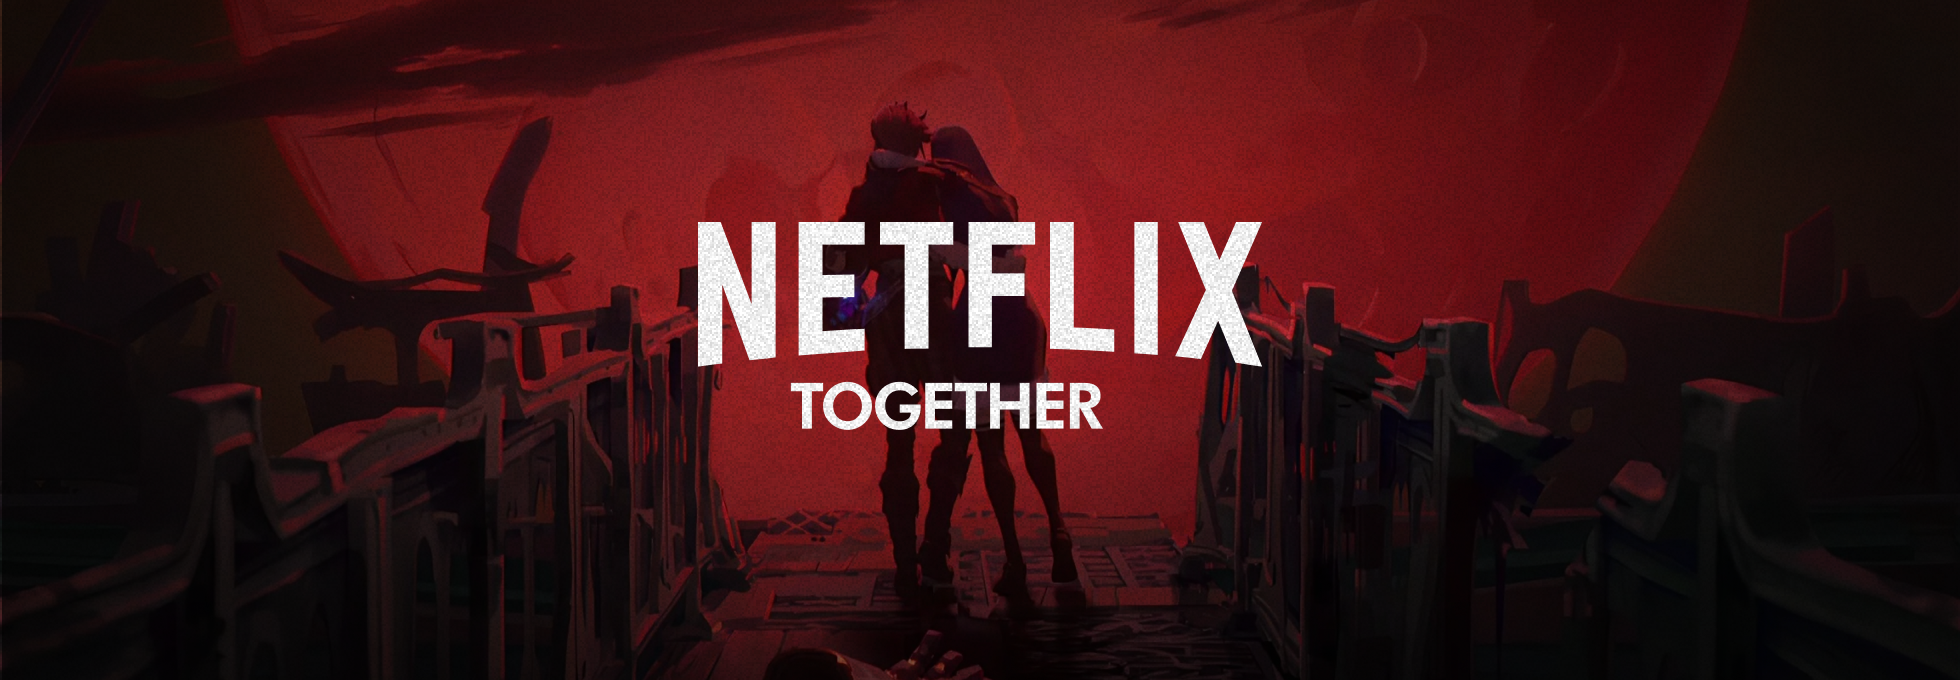 Netflix Together